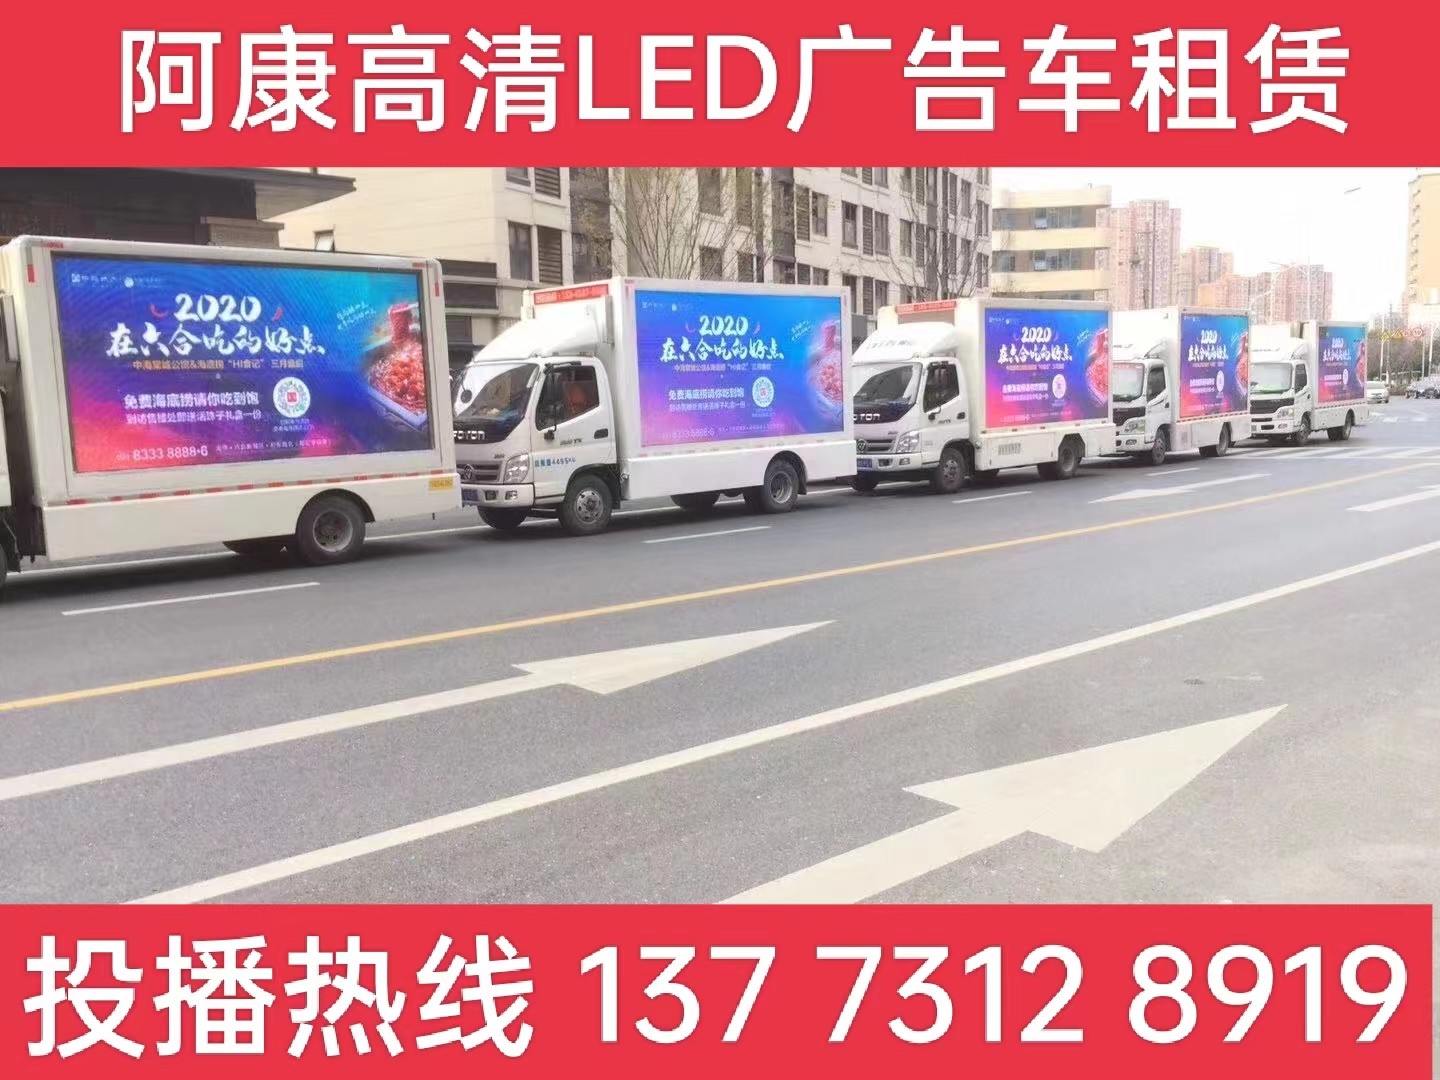 郎溪县宣传车出租-海底捞LED广告